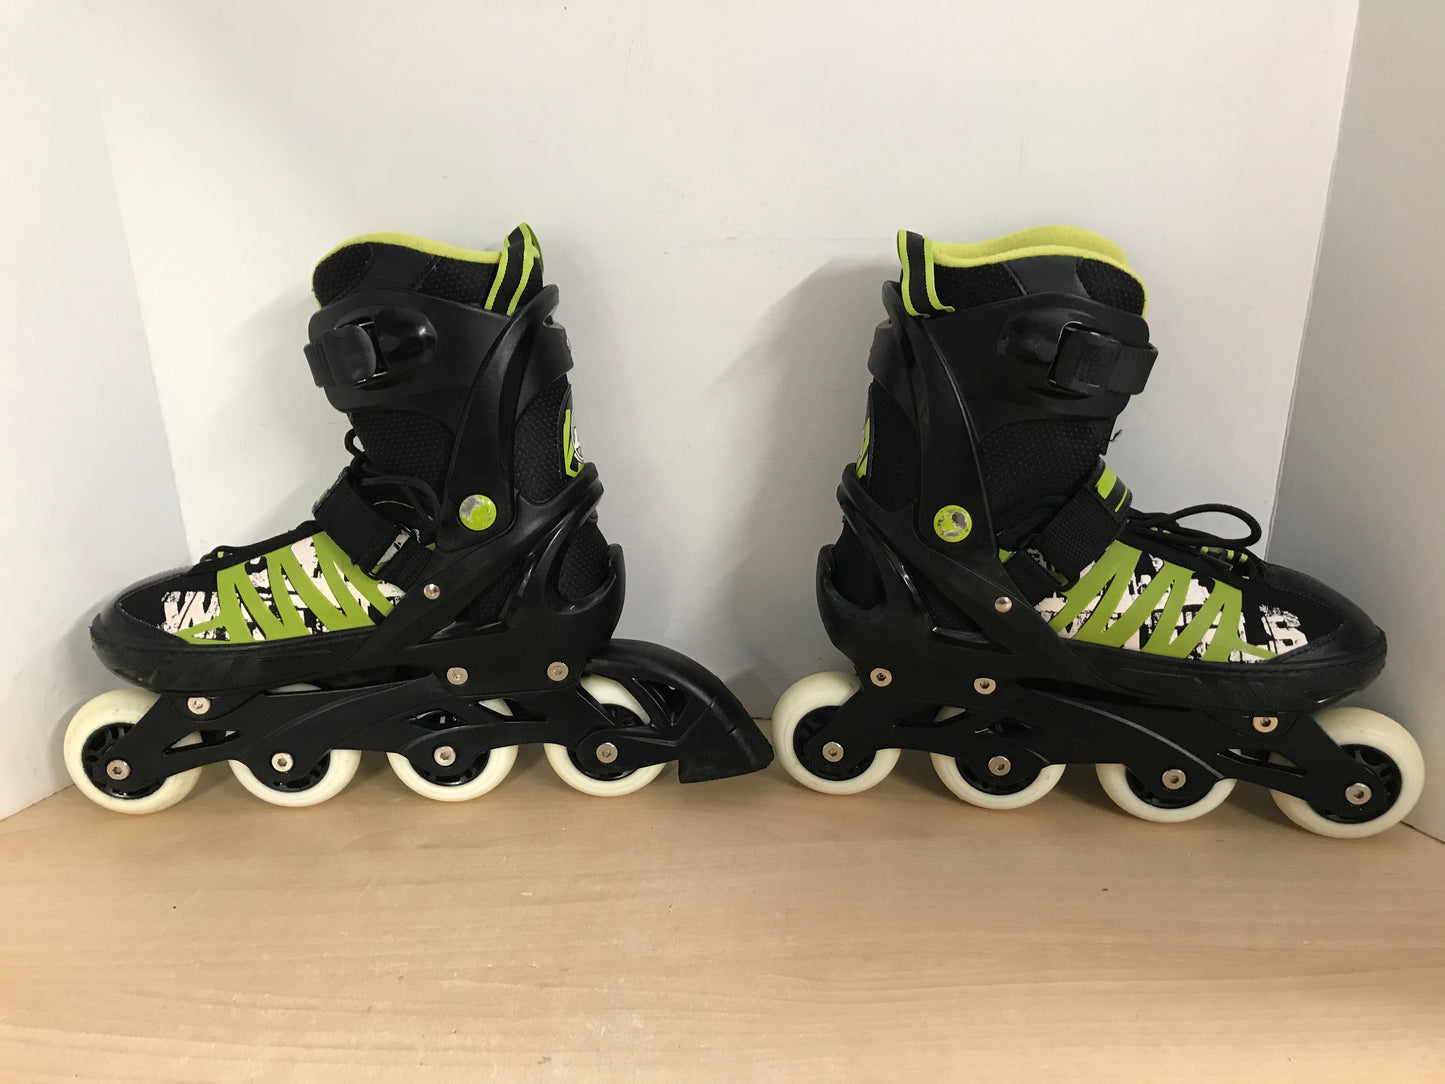 Inline Roller Skates Men's Size 9-11 Ultra Wheels Adjustable Rubber Wheels Black Lime Excellent